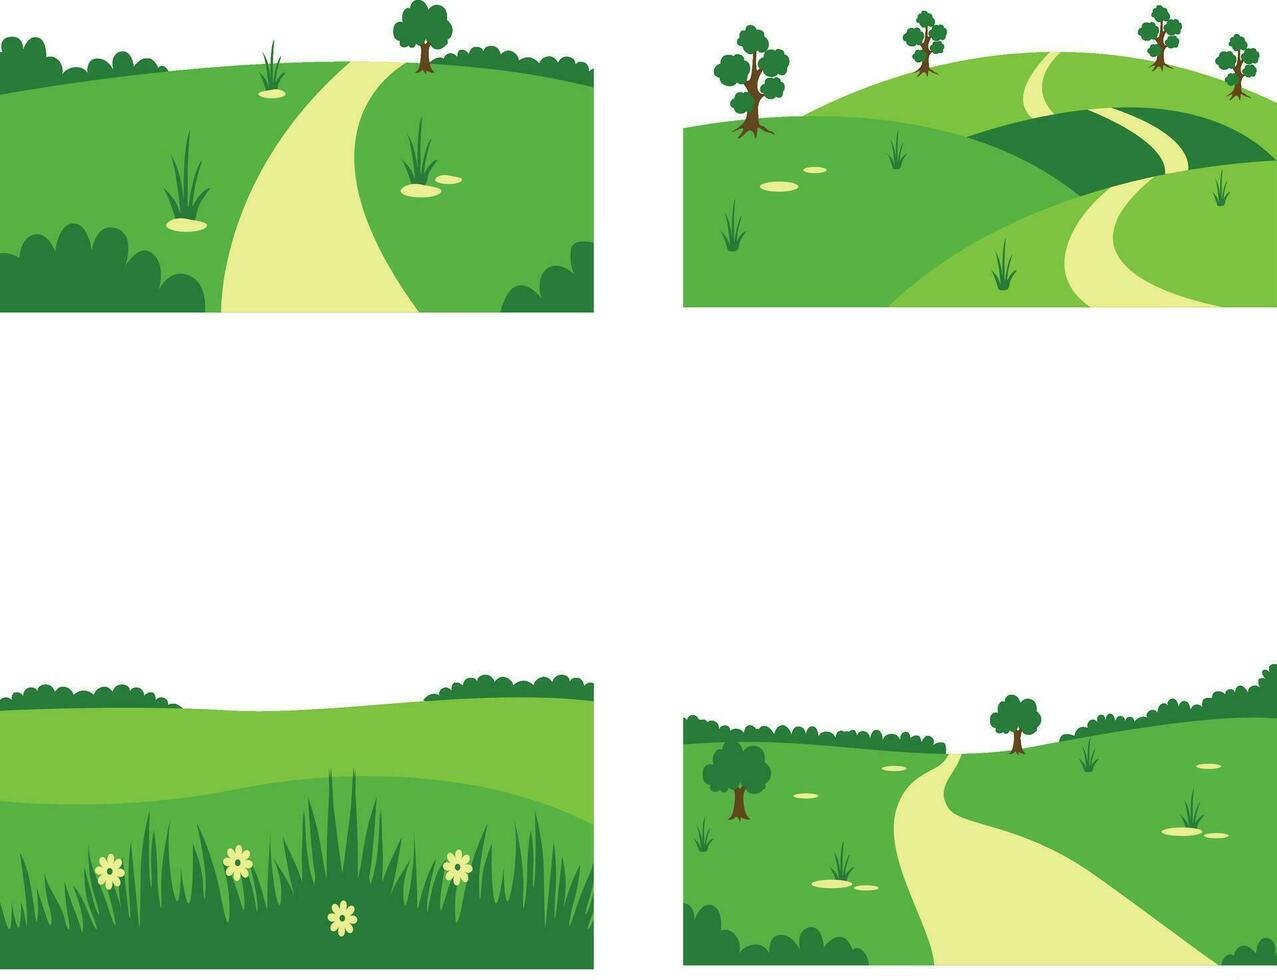 reeks van verschillend veld- groen heuvels. in esthetisch ontwerp concept. vector illustratie.